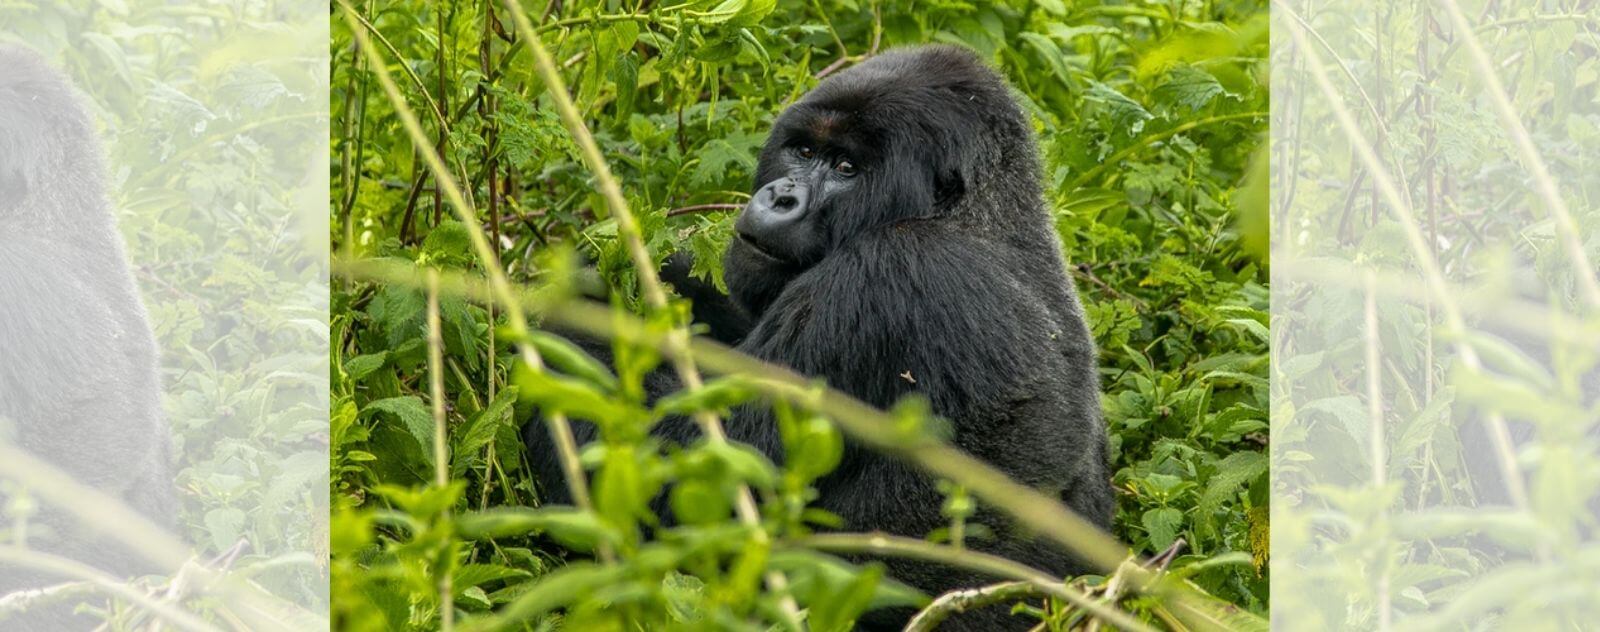 Gorila oriental en la jungla (el primate más grande del mundo)